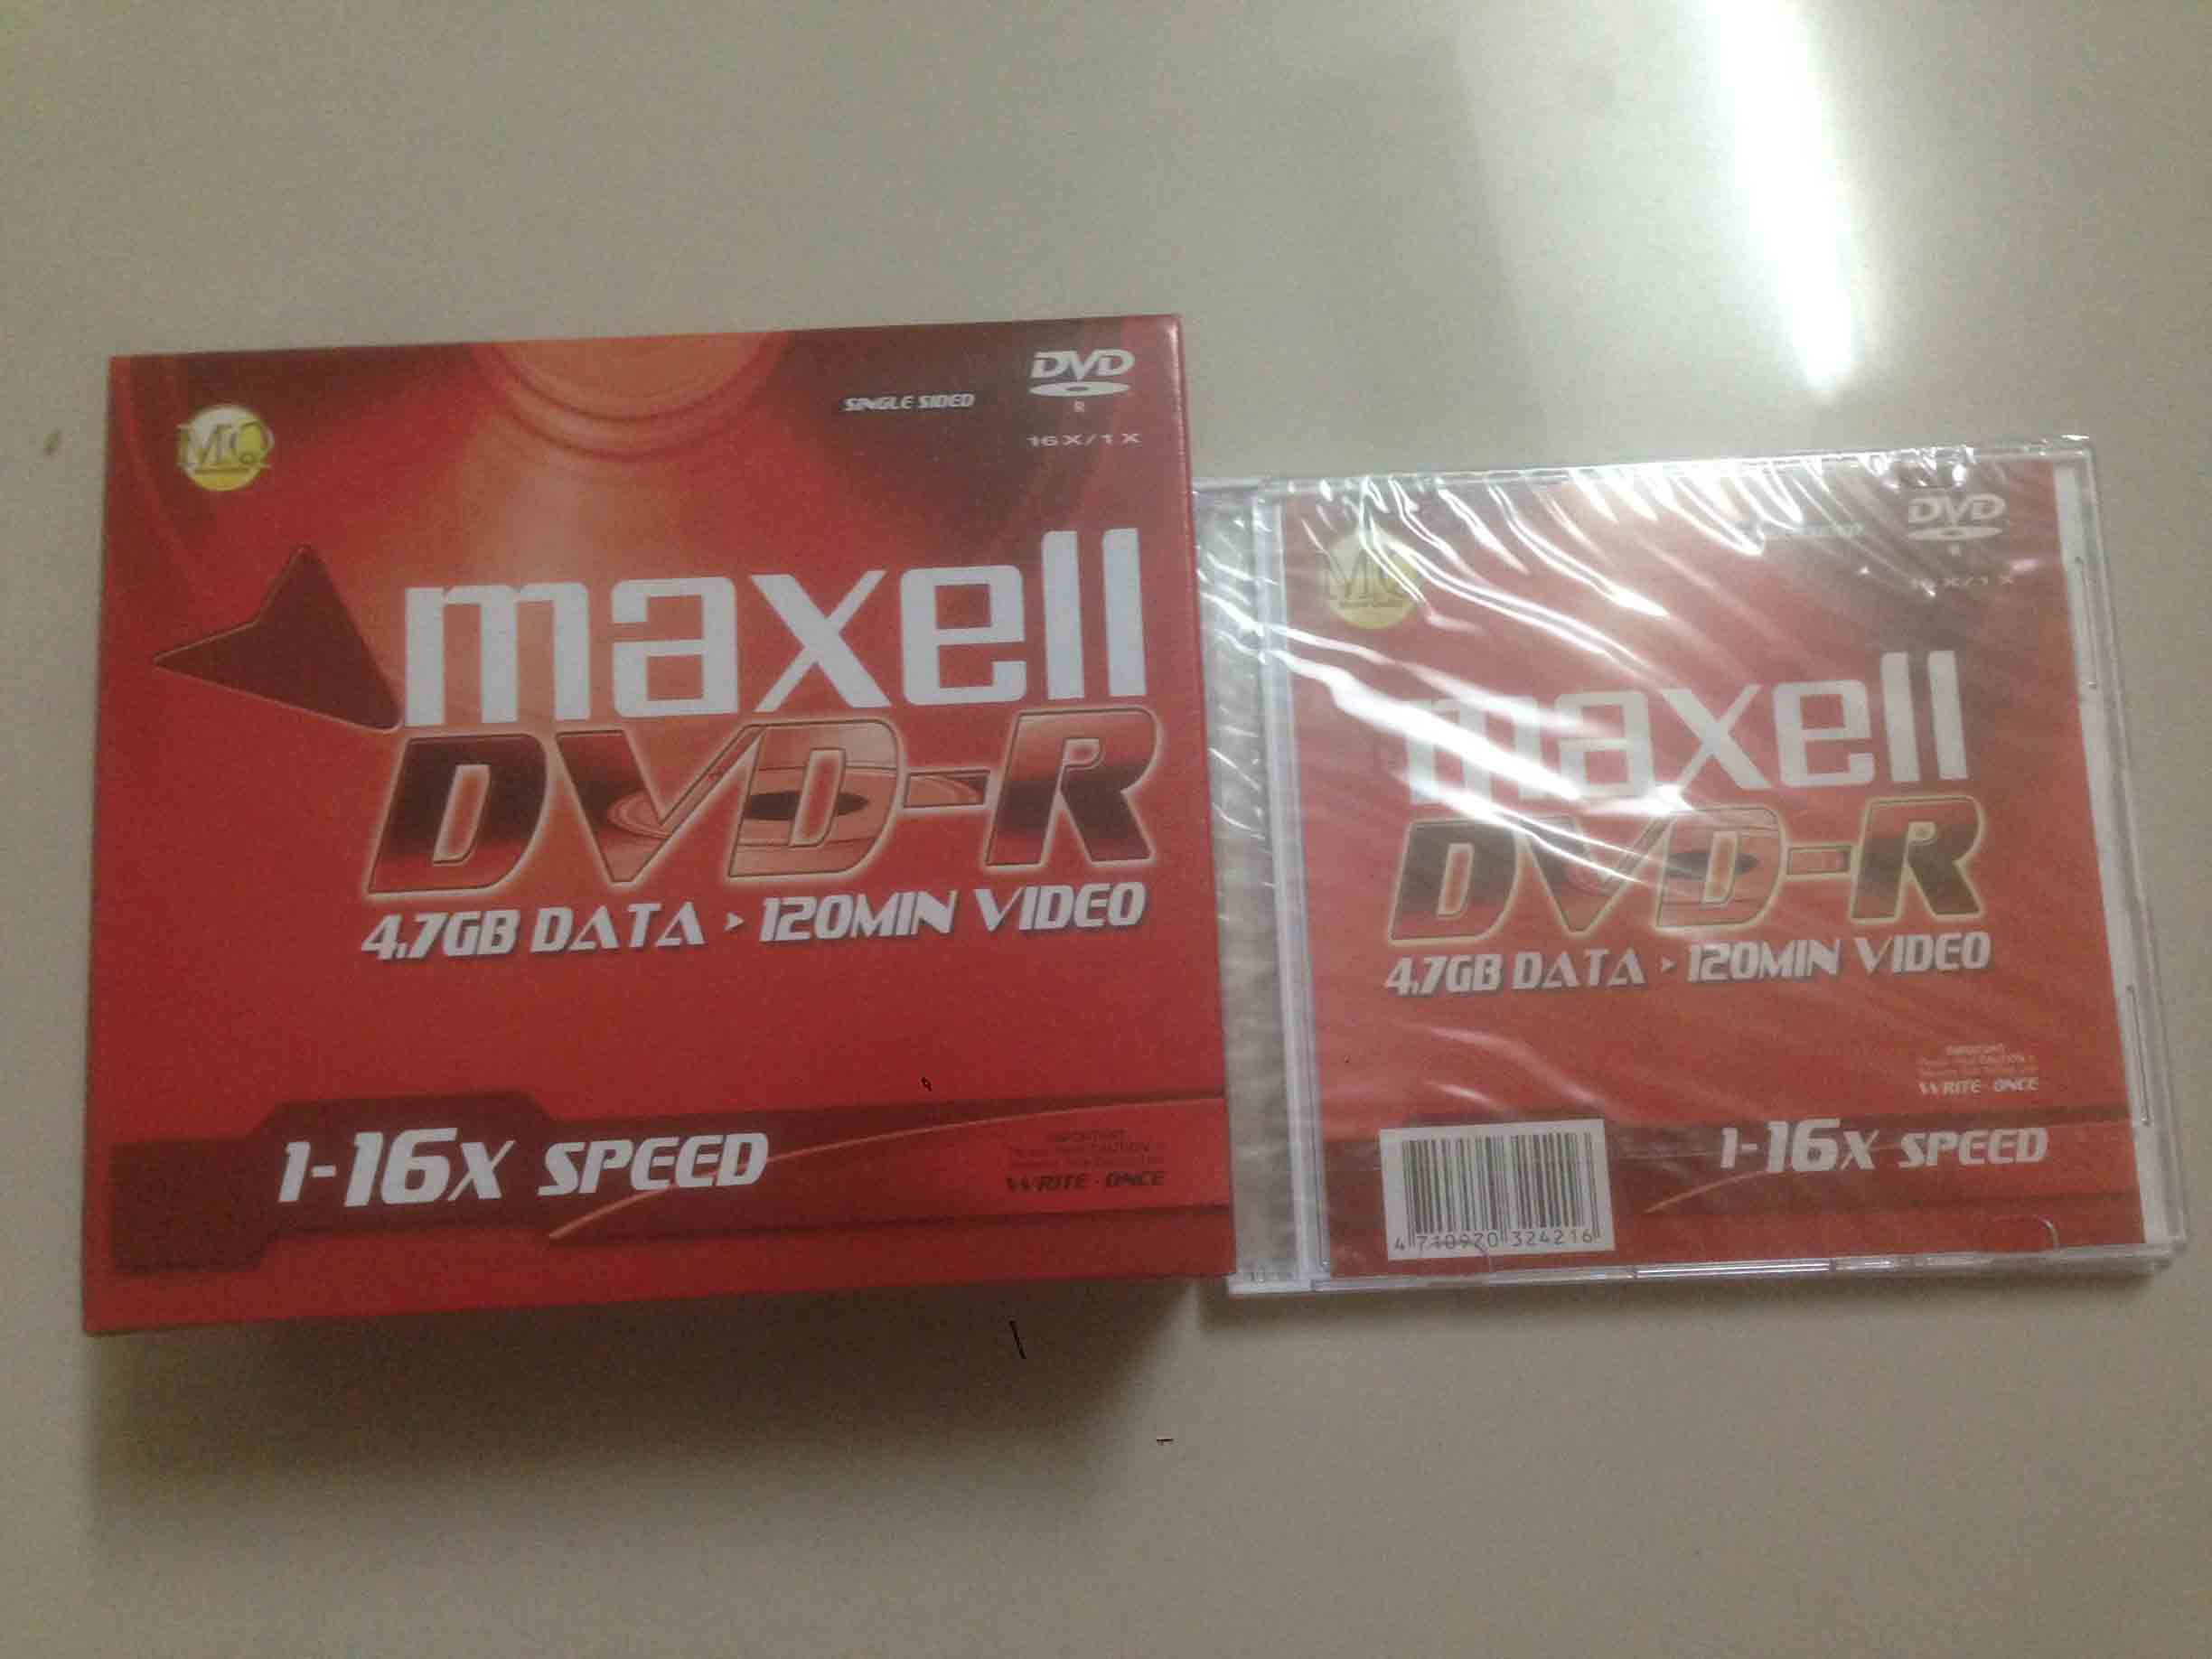 Bộ 10 Đĩa Dvd-r Maxell Có vỏ hộp nhựa riêng Chất Lượng Cao - Chuyên ghi Dữ liệu Phim nhạc Video Blank disc